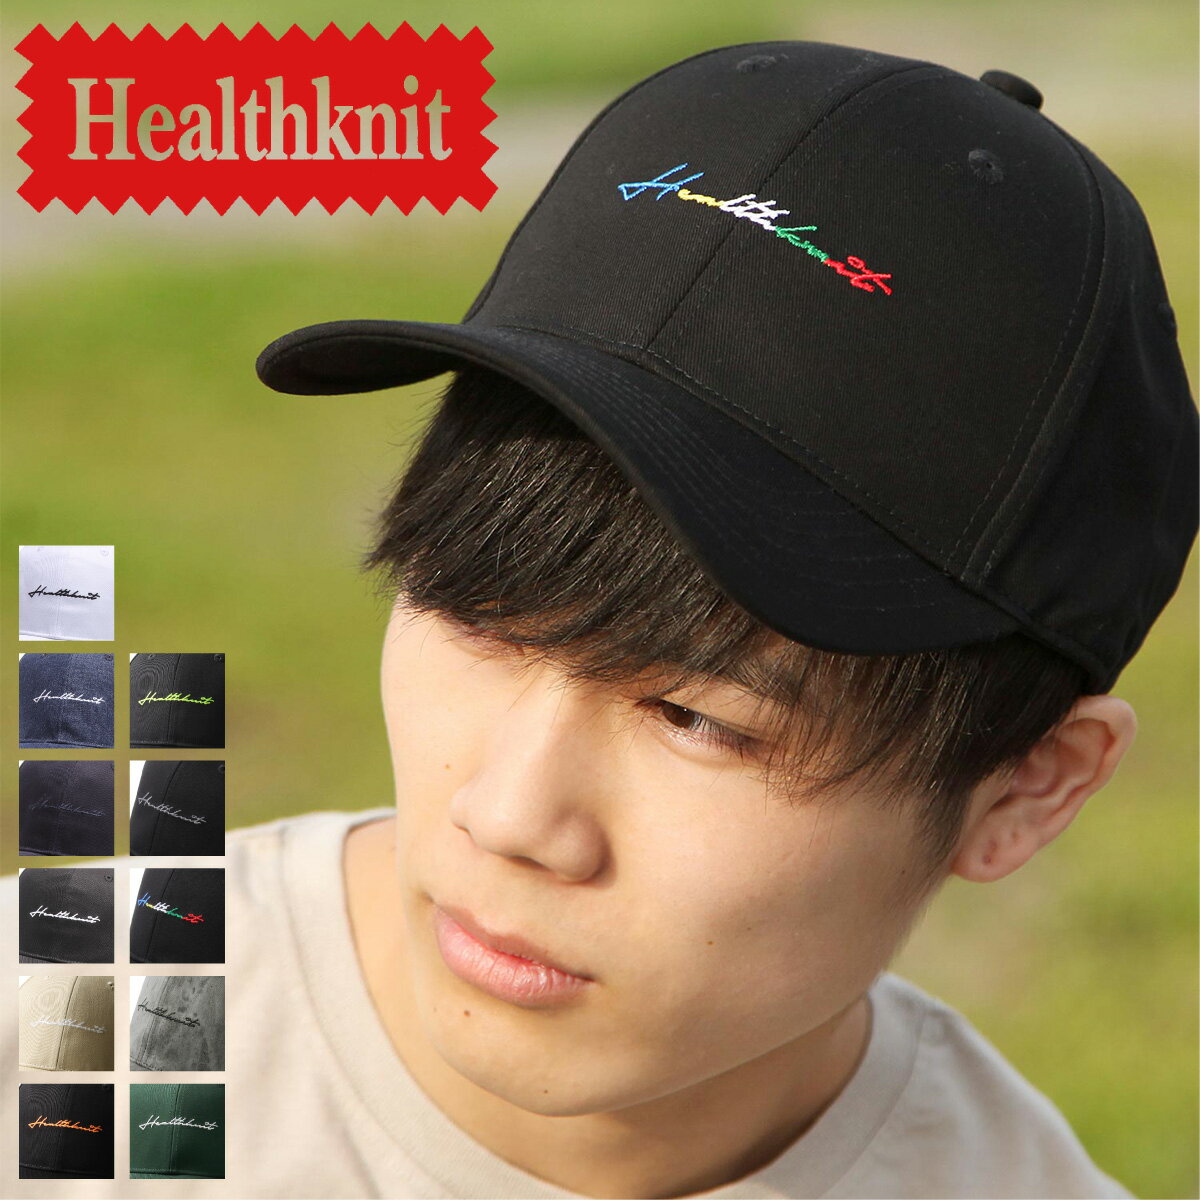 キャップ メンズ ローキャップ ツイル 刺繍 帽子 野球帽 ベースボールキャップ ストラップバック 調整可 ZIP ジップ (291-4074)